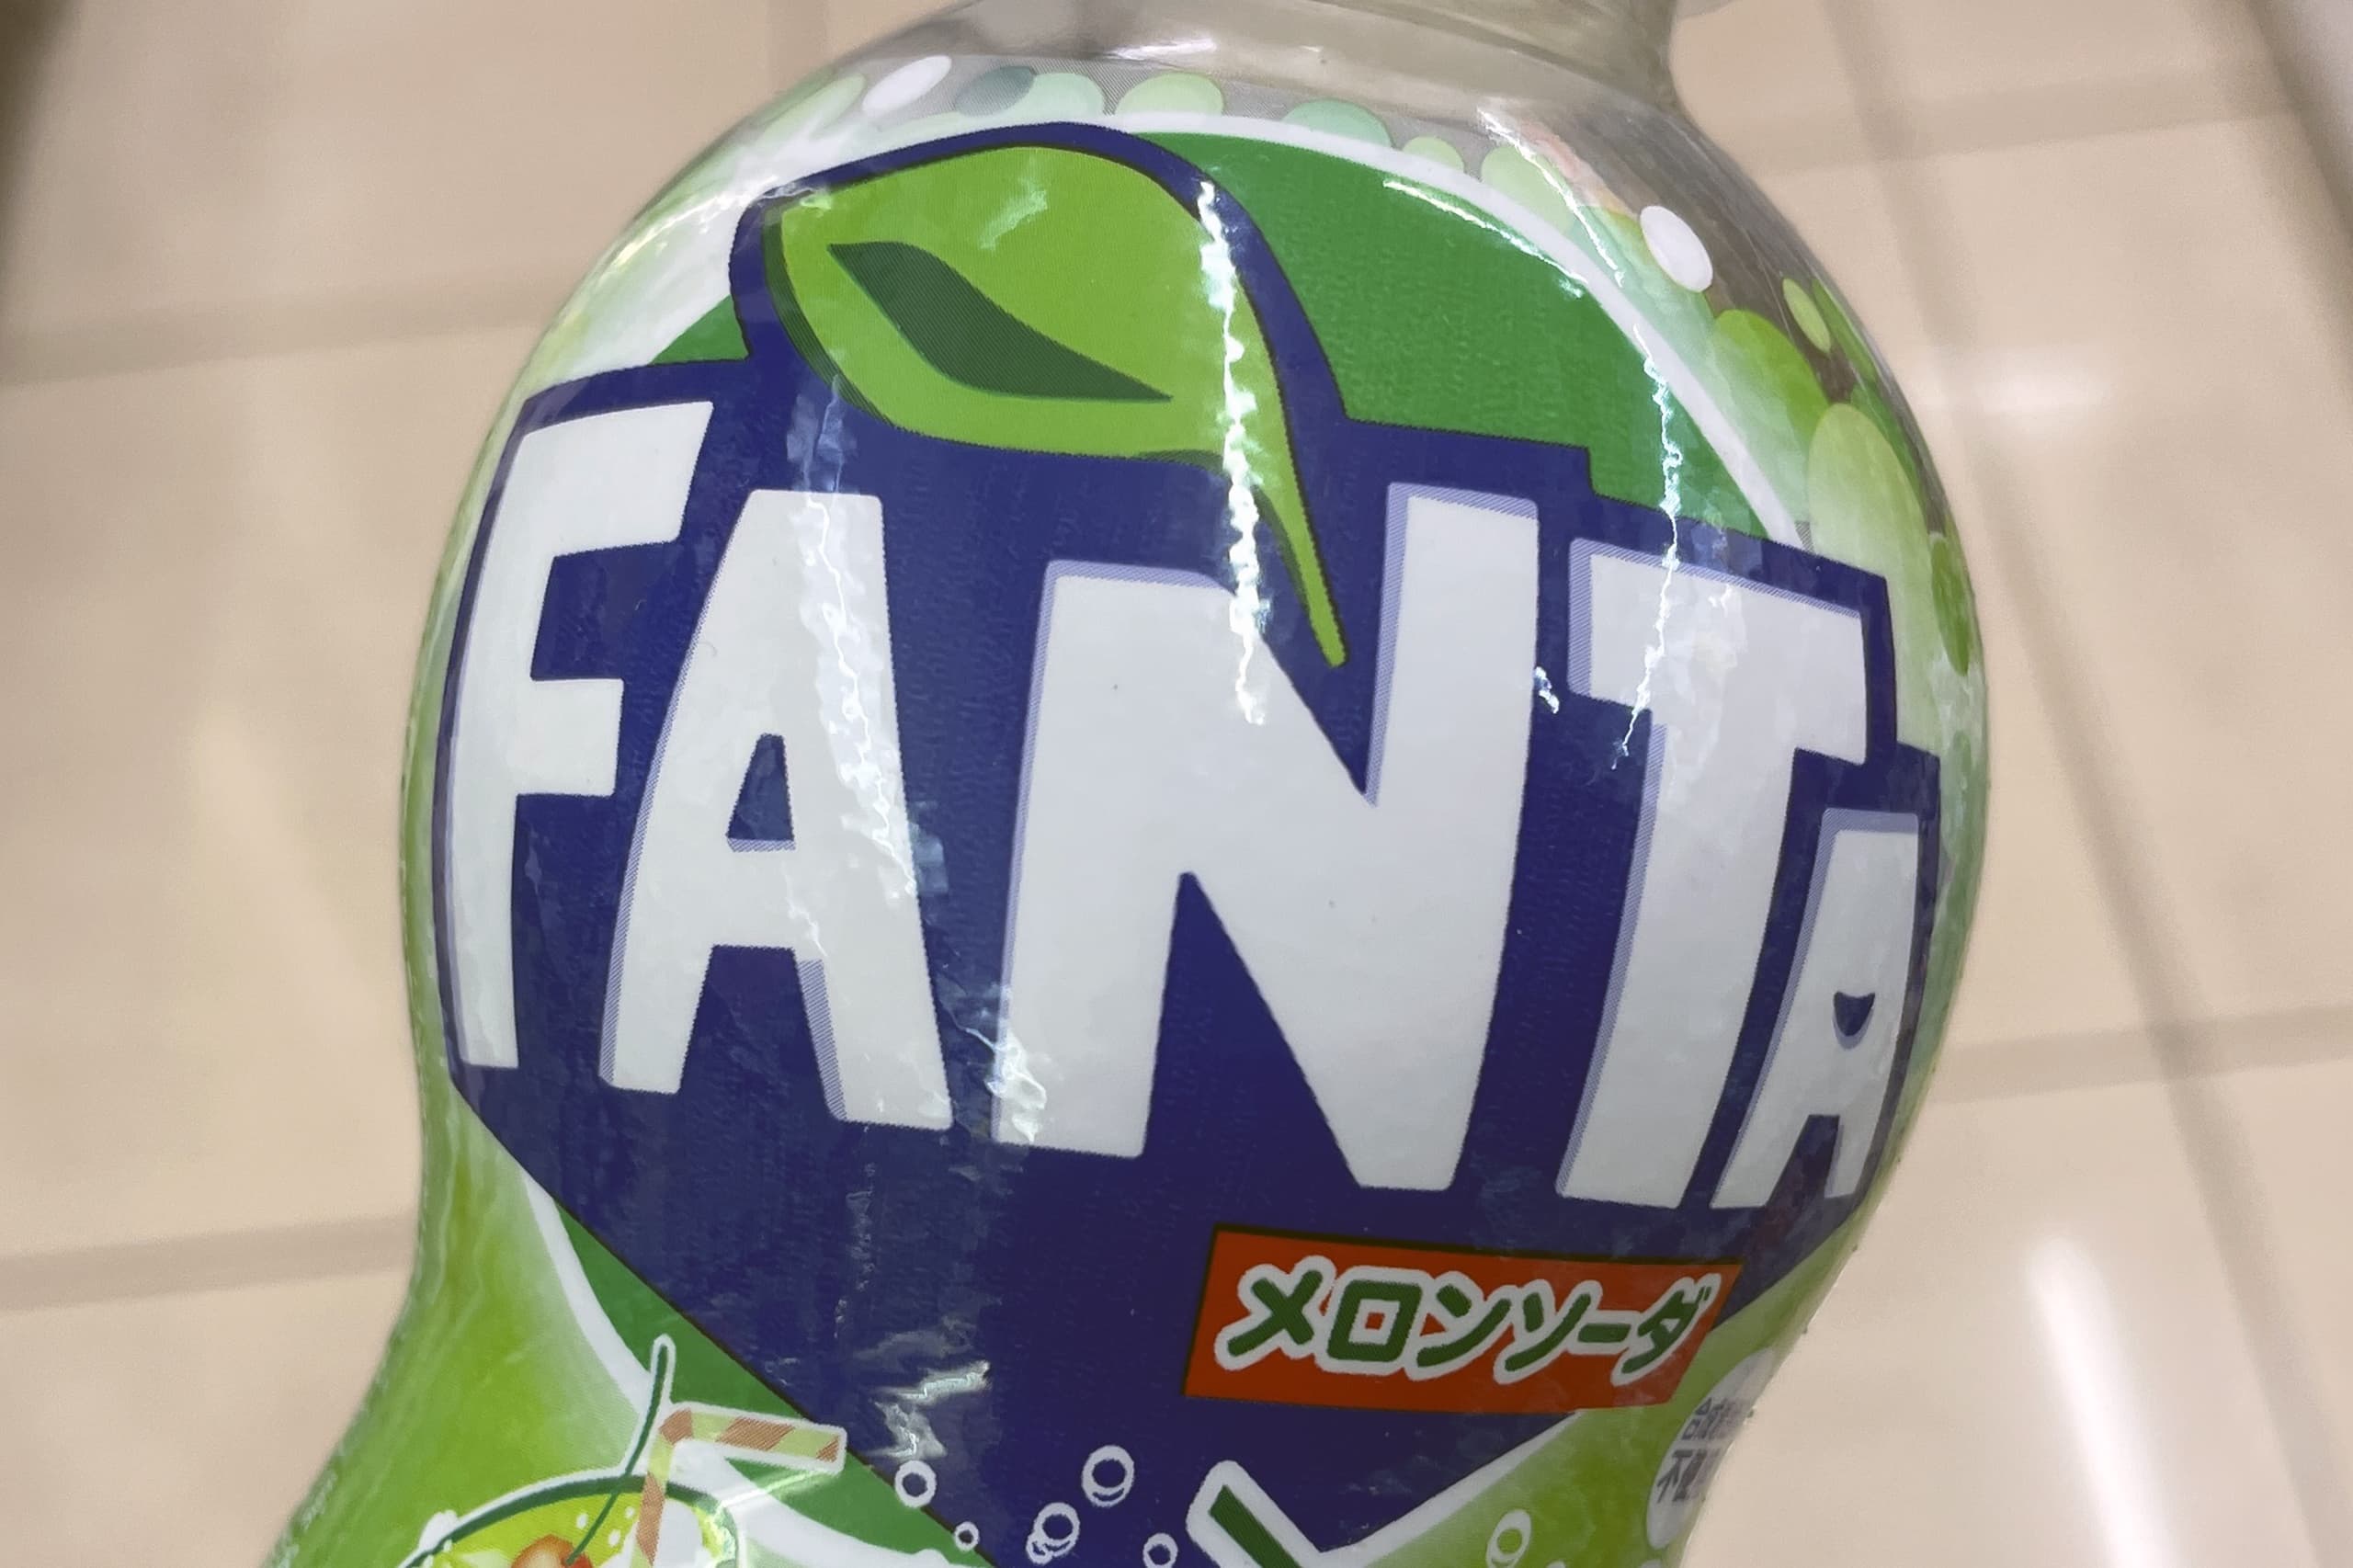 日米でファンタの味に違い 世界的商品の地域差の原因が判明か Sirabee